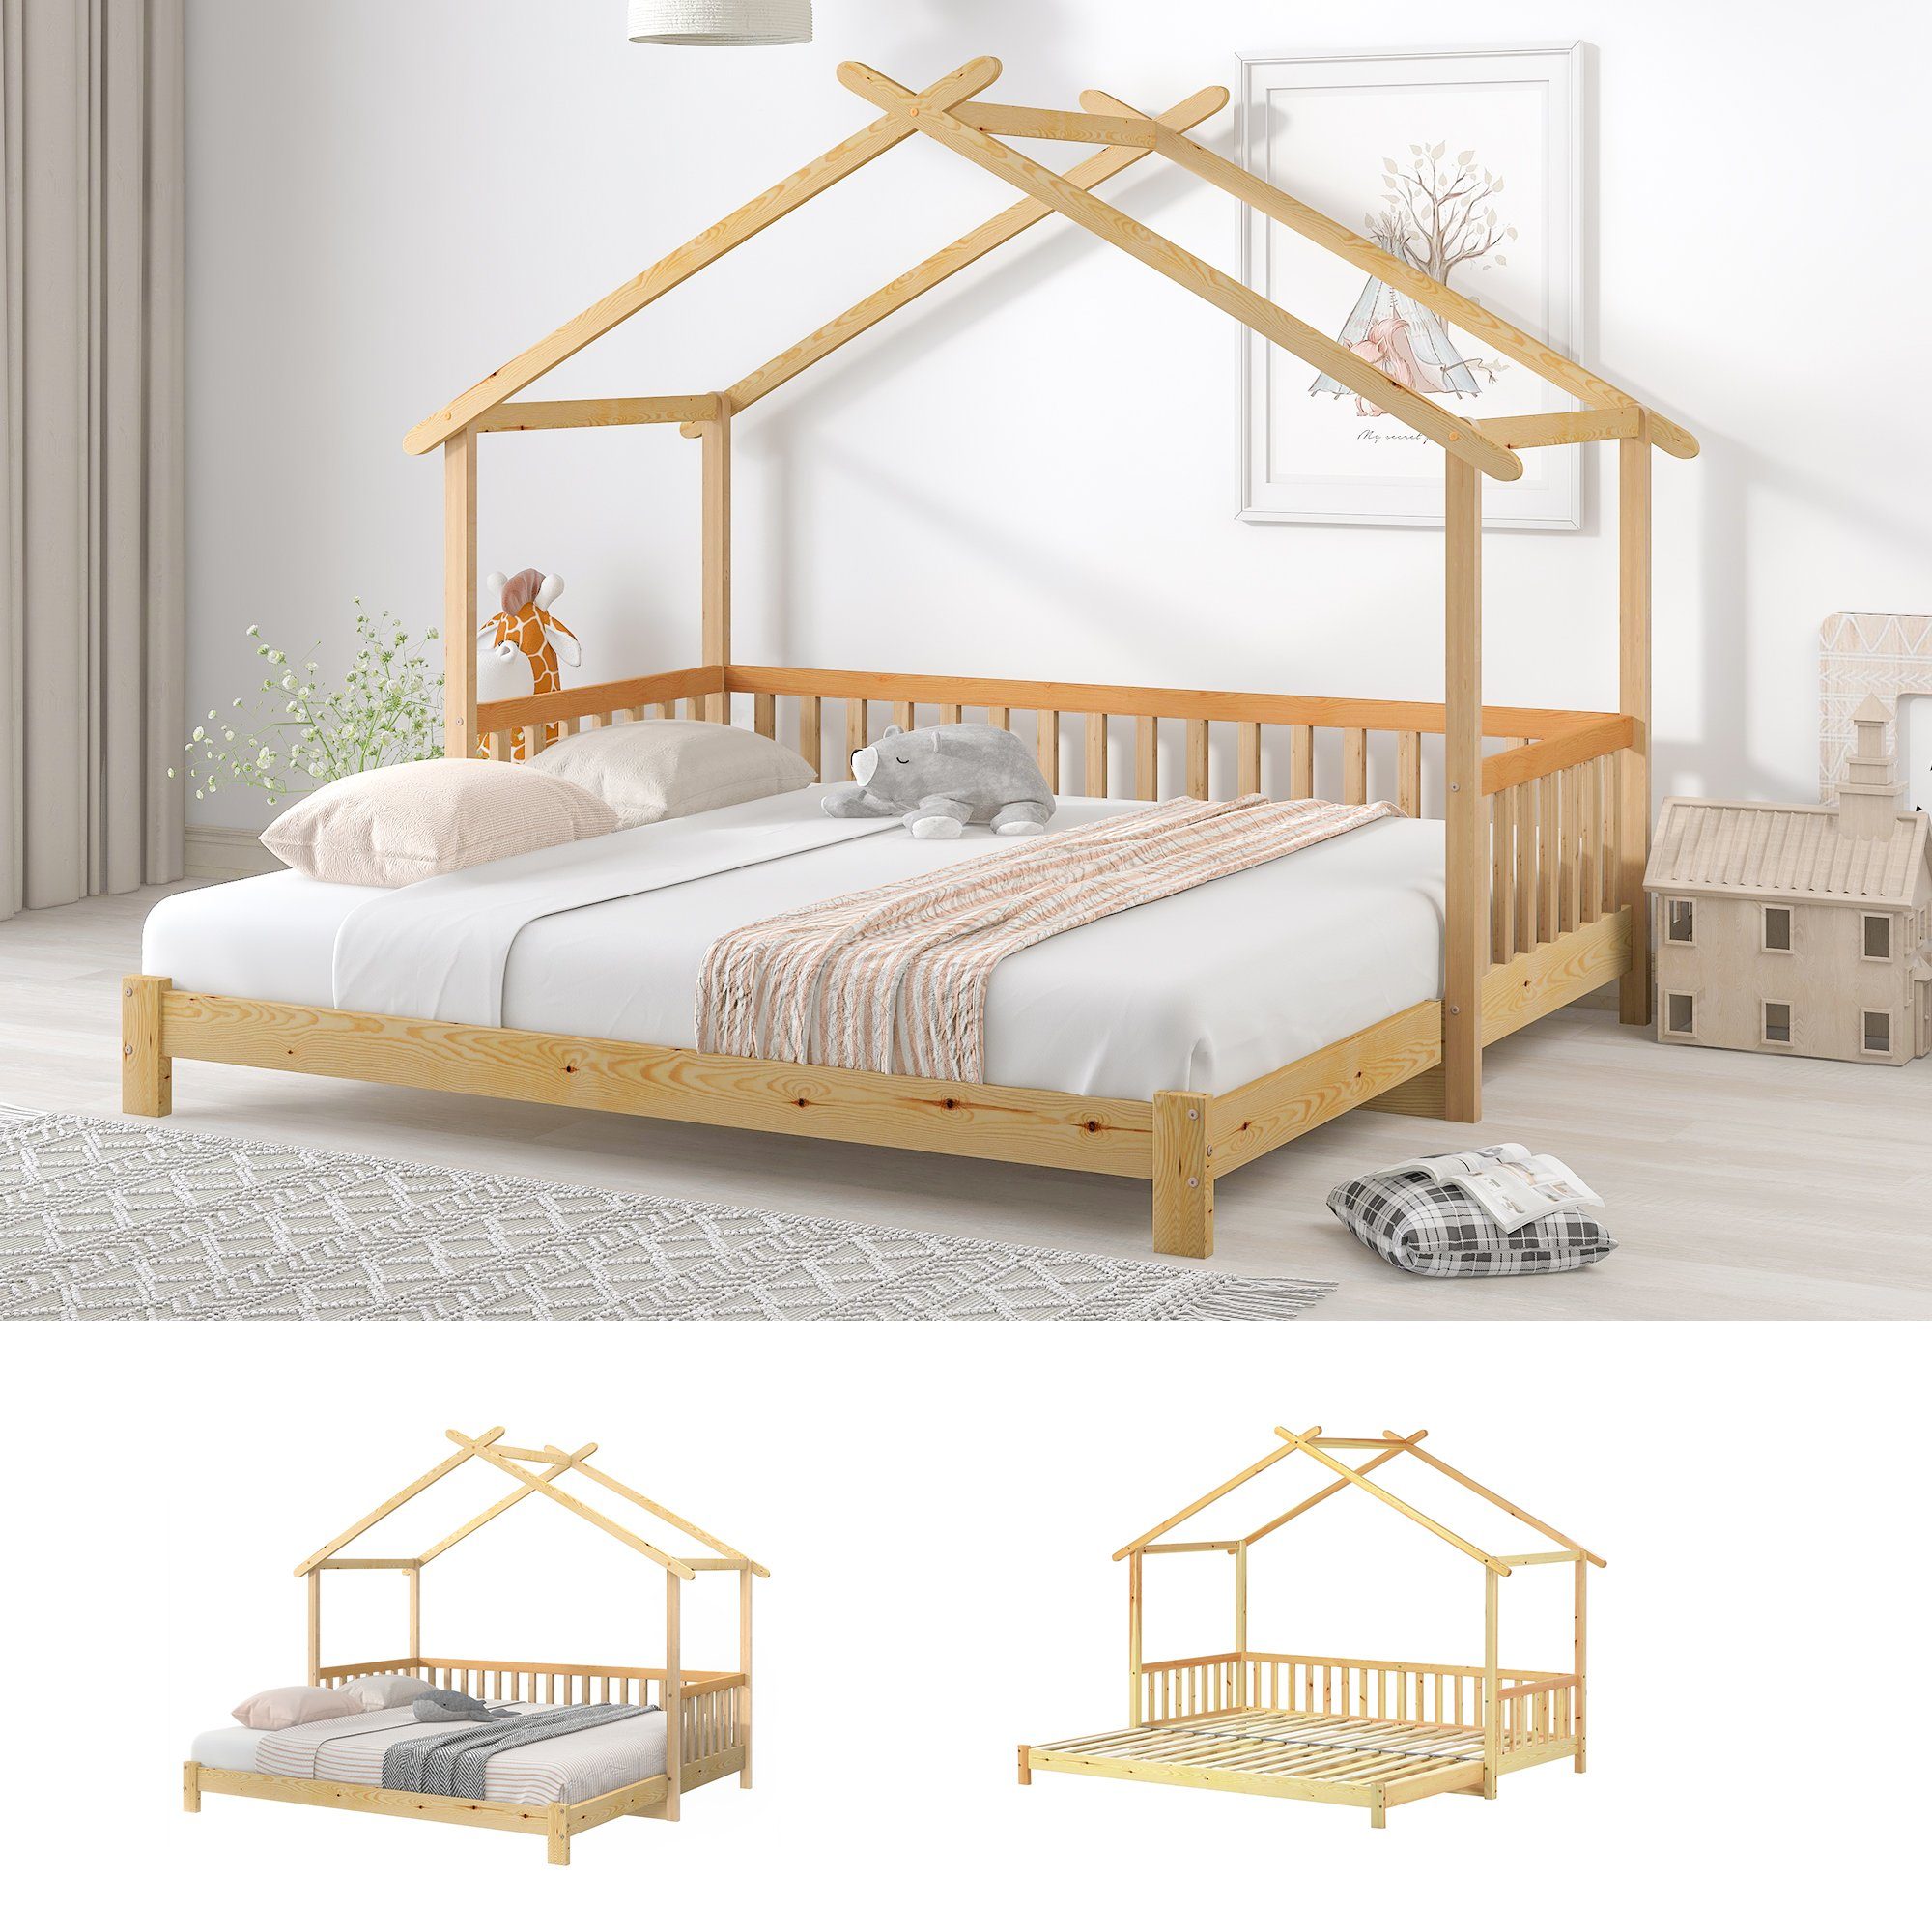 Bett Erweiterbares Hausbett, REDOM Baumhausbett, Matratze (Das enthält 200x90cm Bett Kinderbett Matratze), Ohne keine